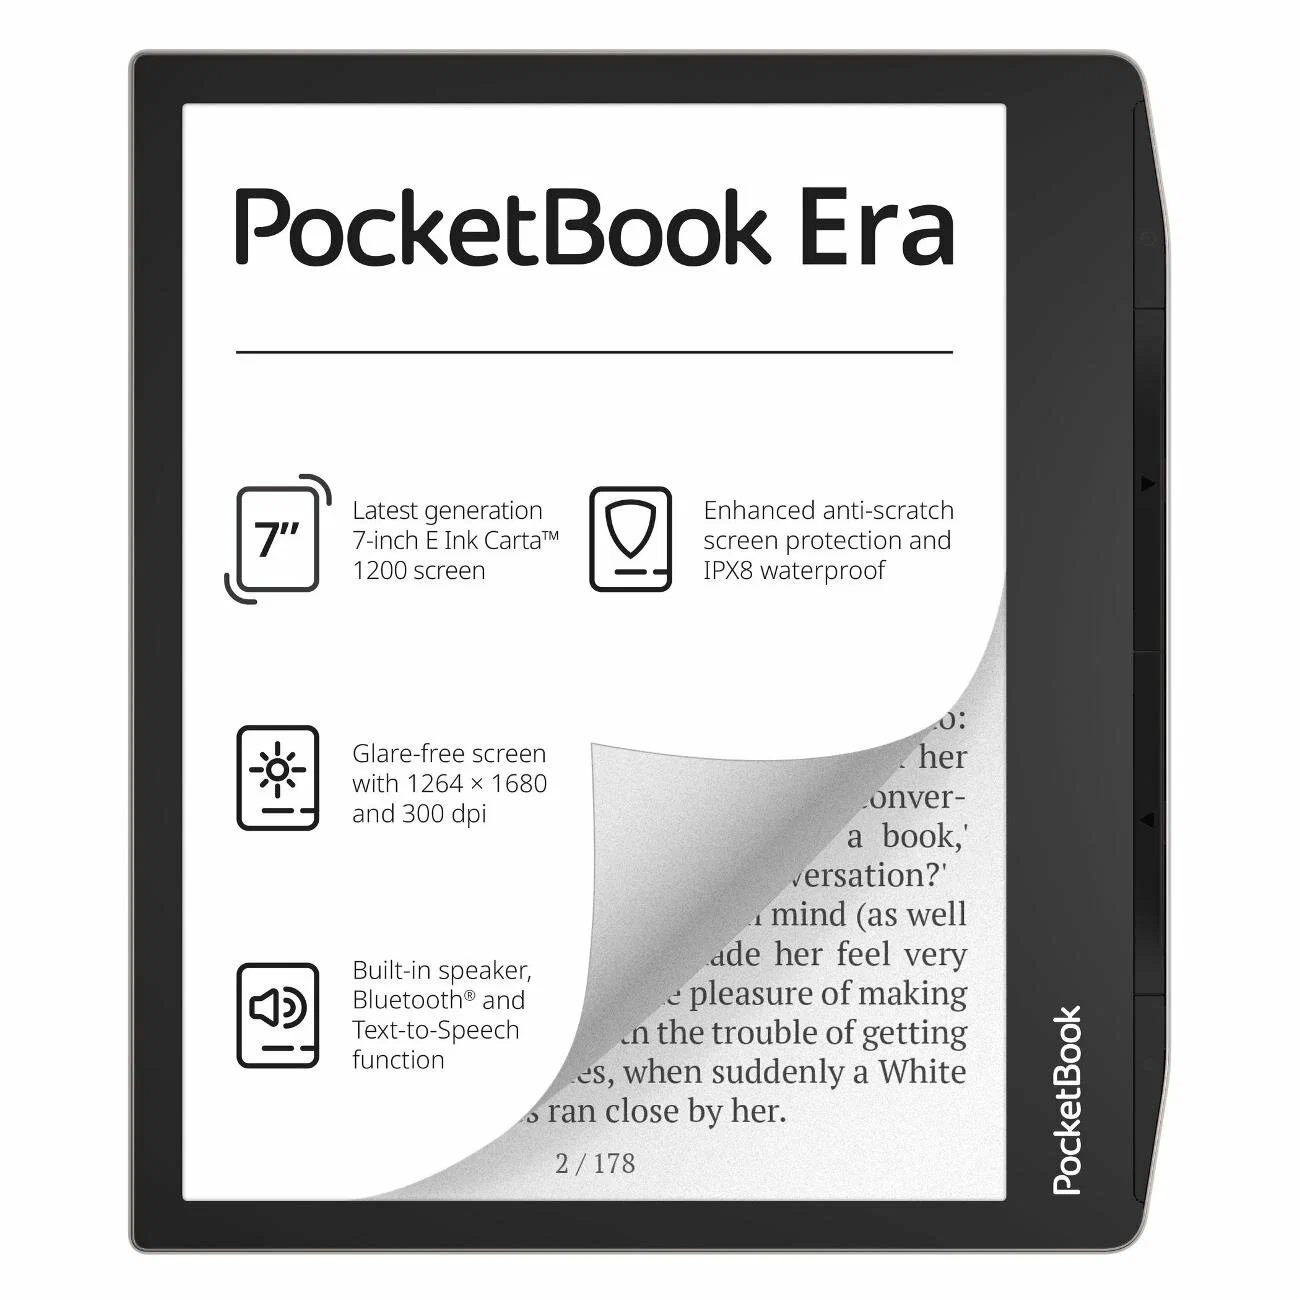 7" Электронная книга PocketBook Era 1680x1264, E-Ink, 16 ГБ, серебристый